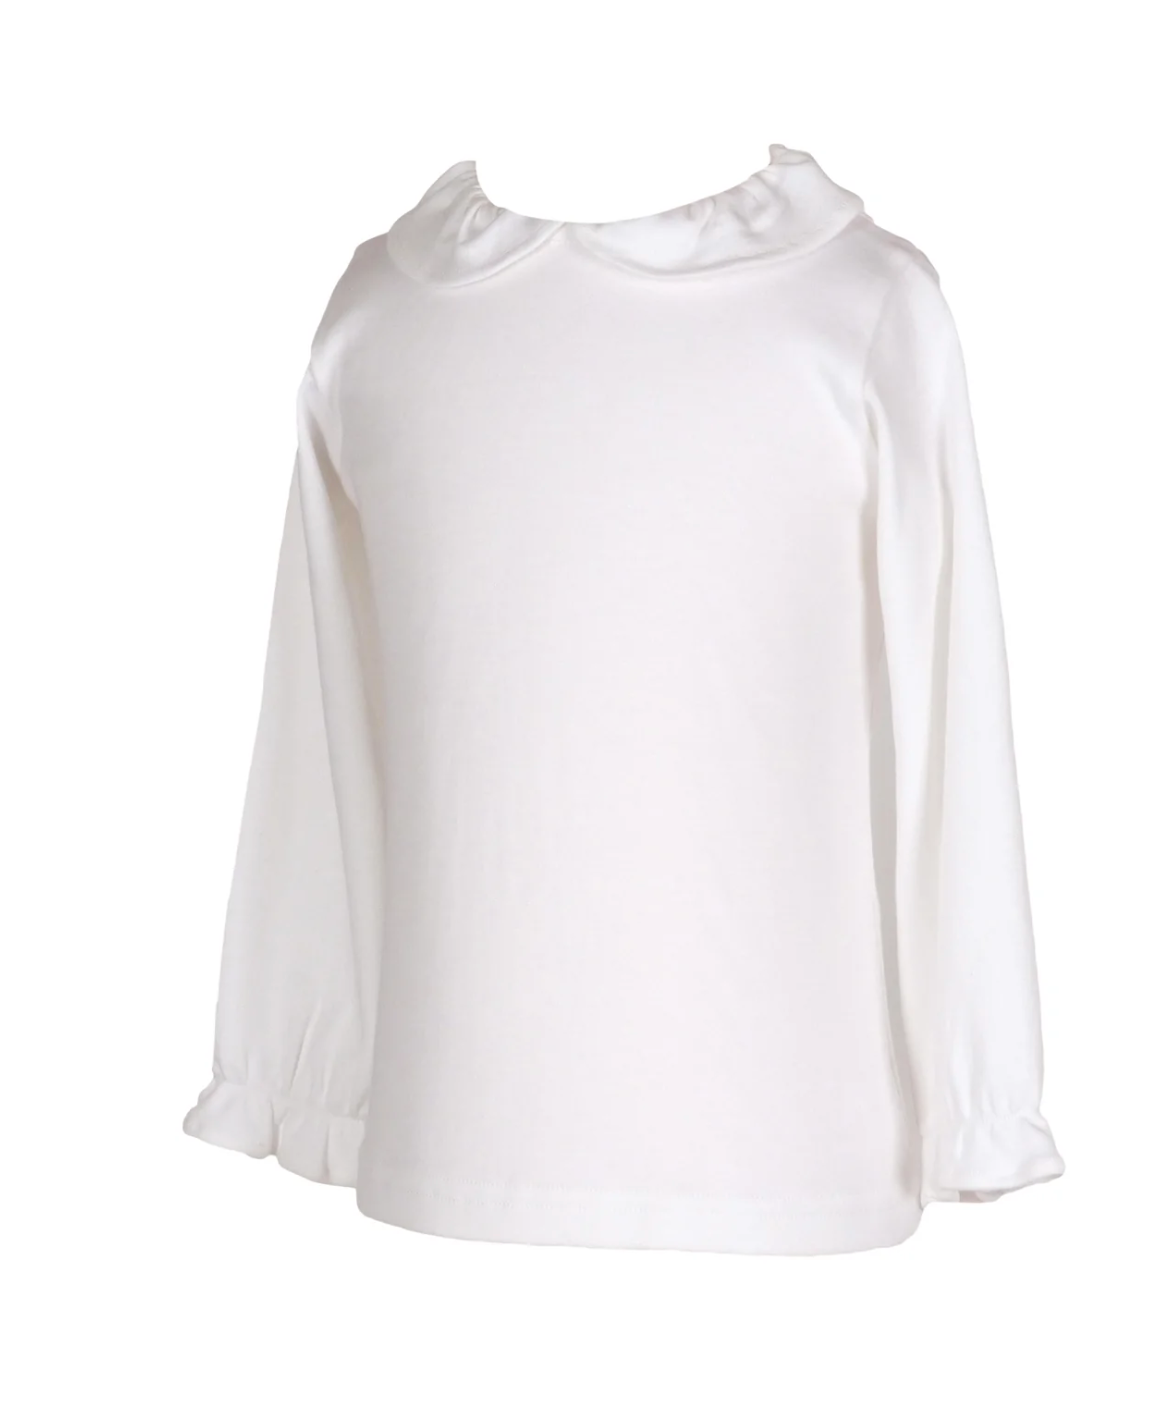 Clare Shirt in Pima Cotton